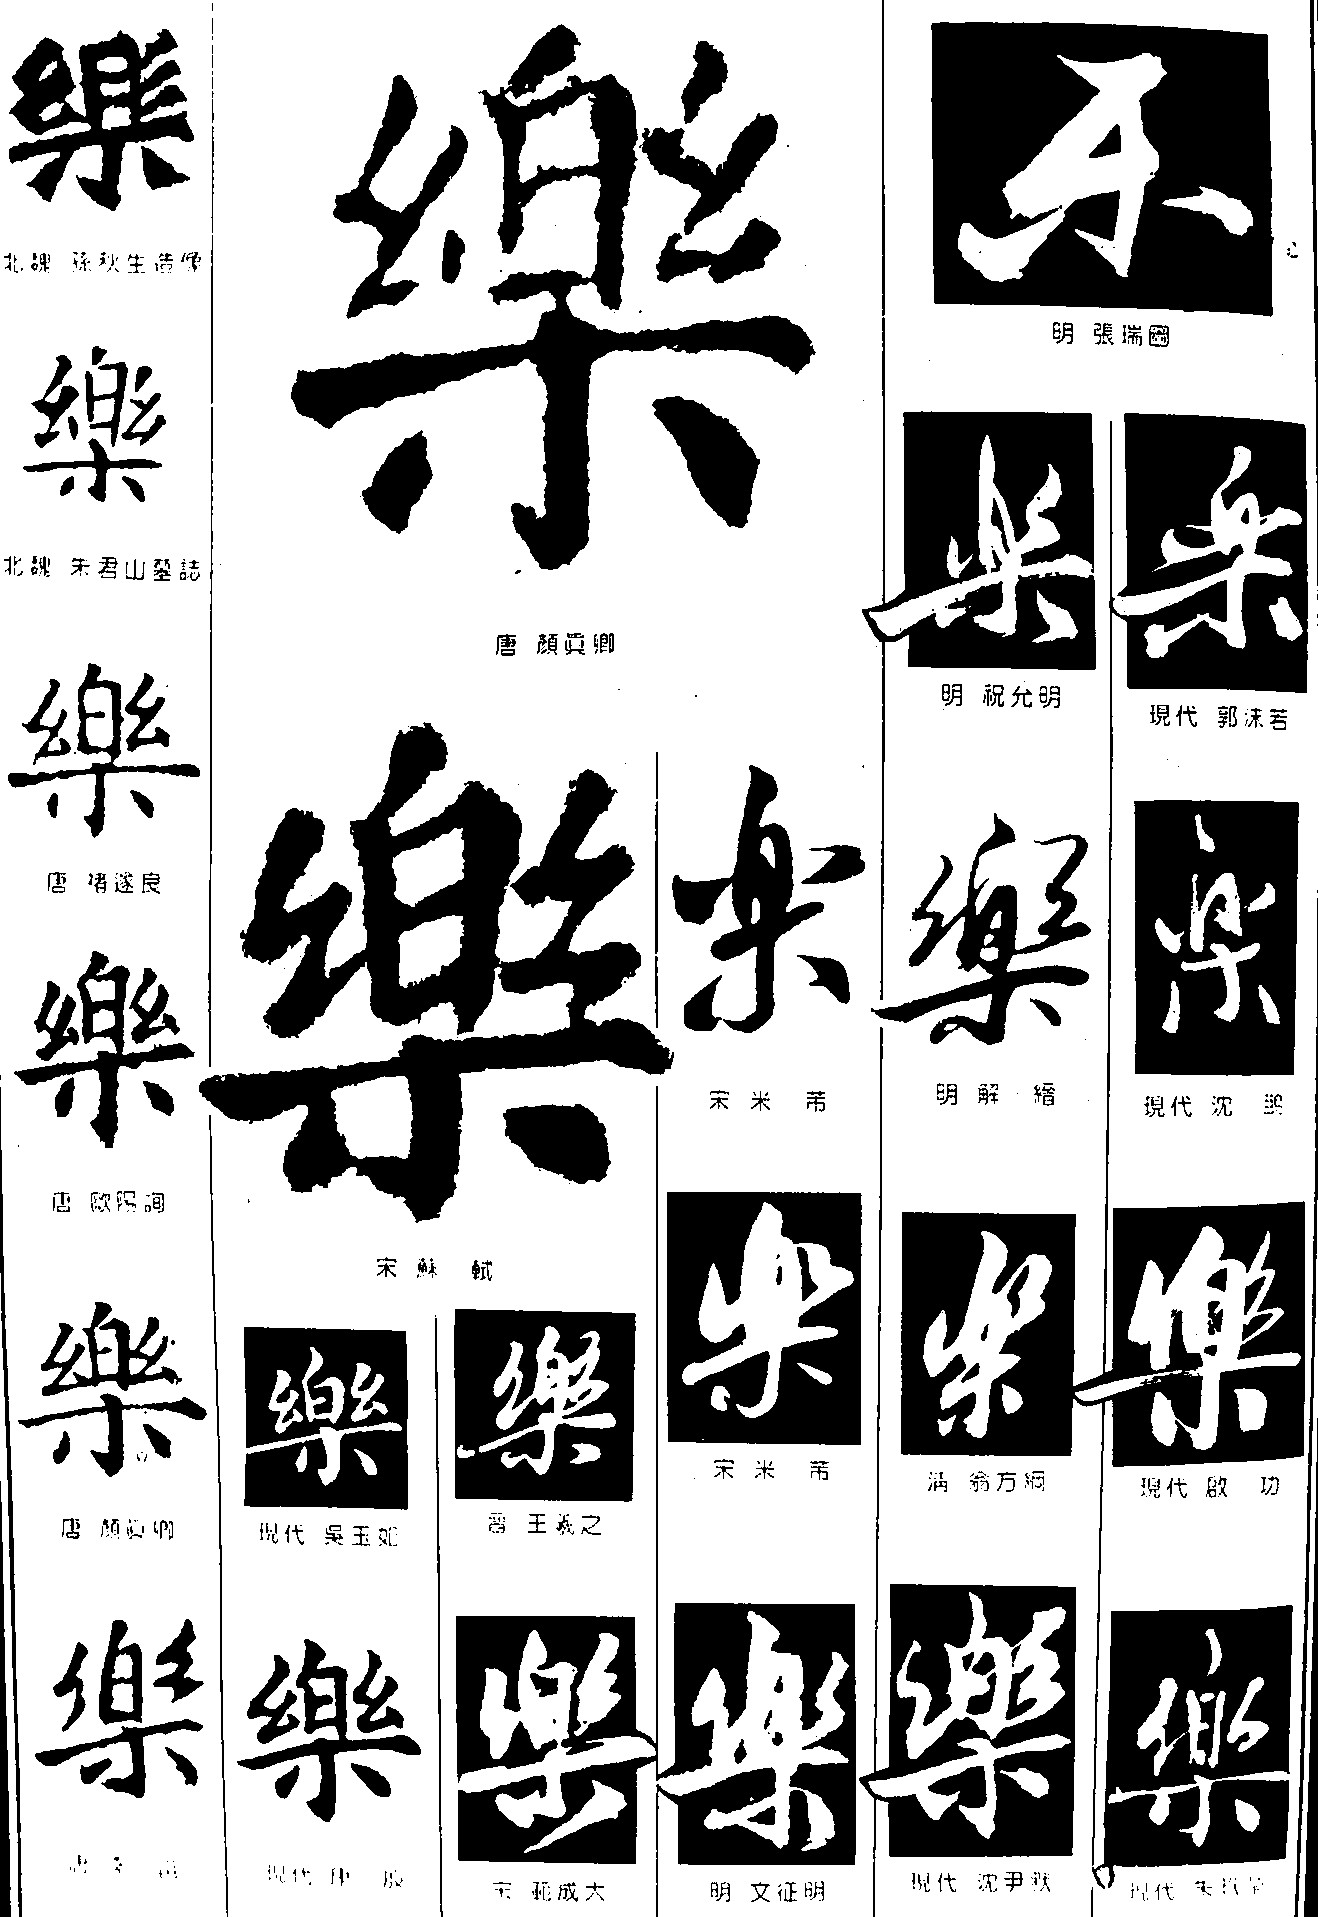 乐_书法字体_字体设计作品-中国字体设计网_ziti.